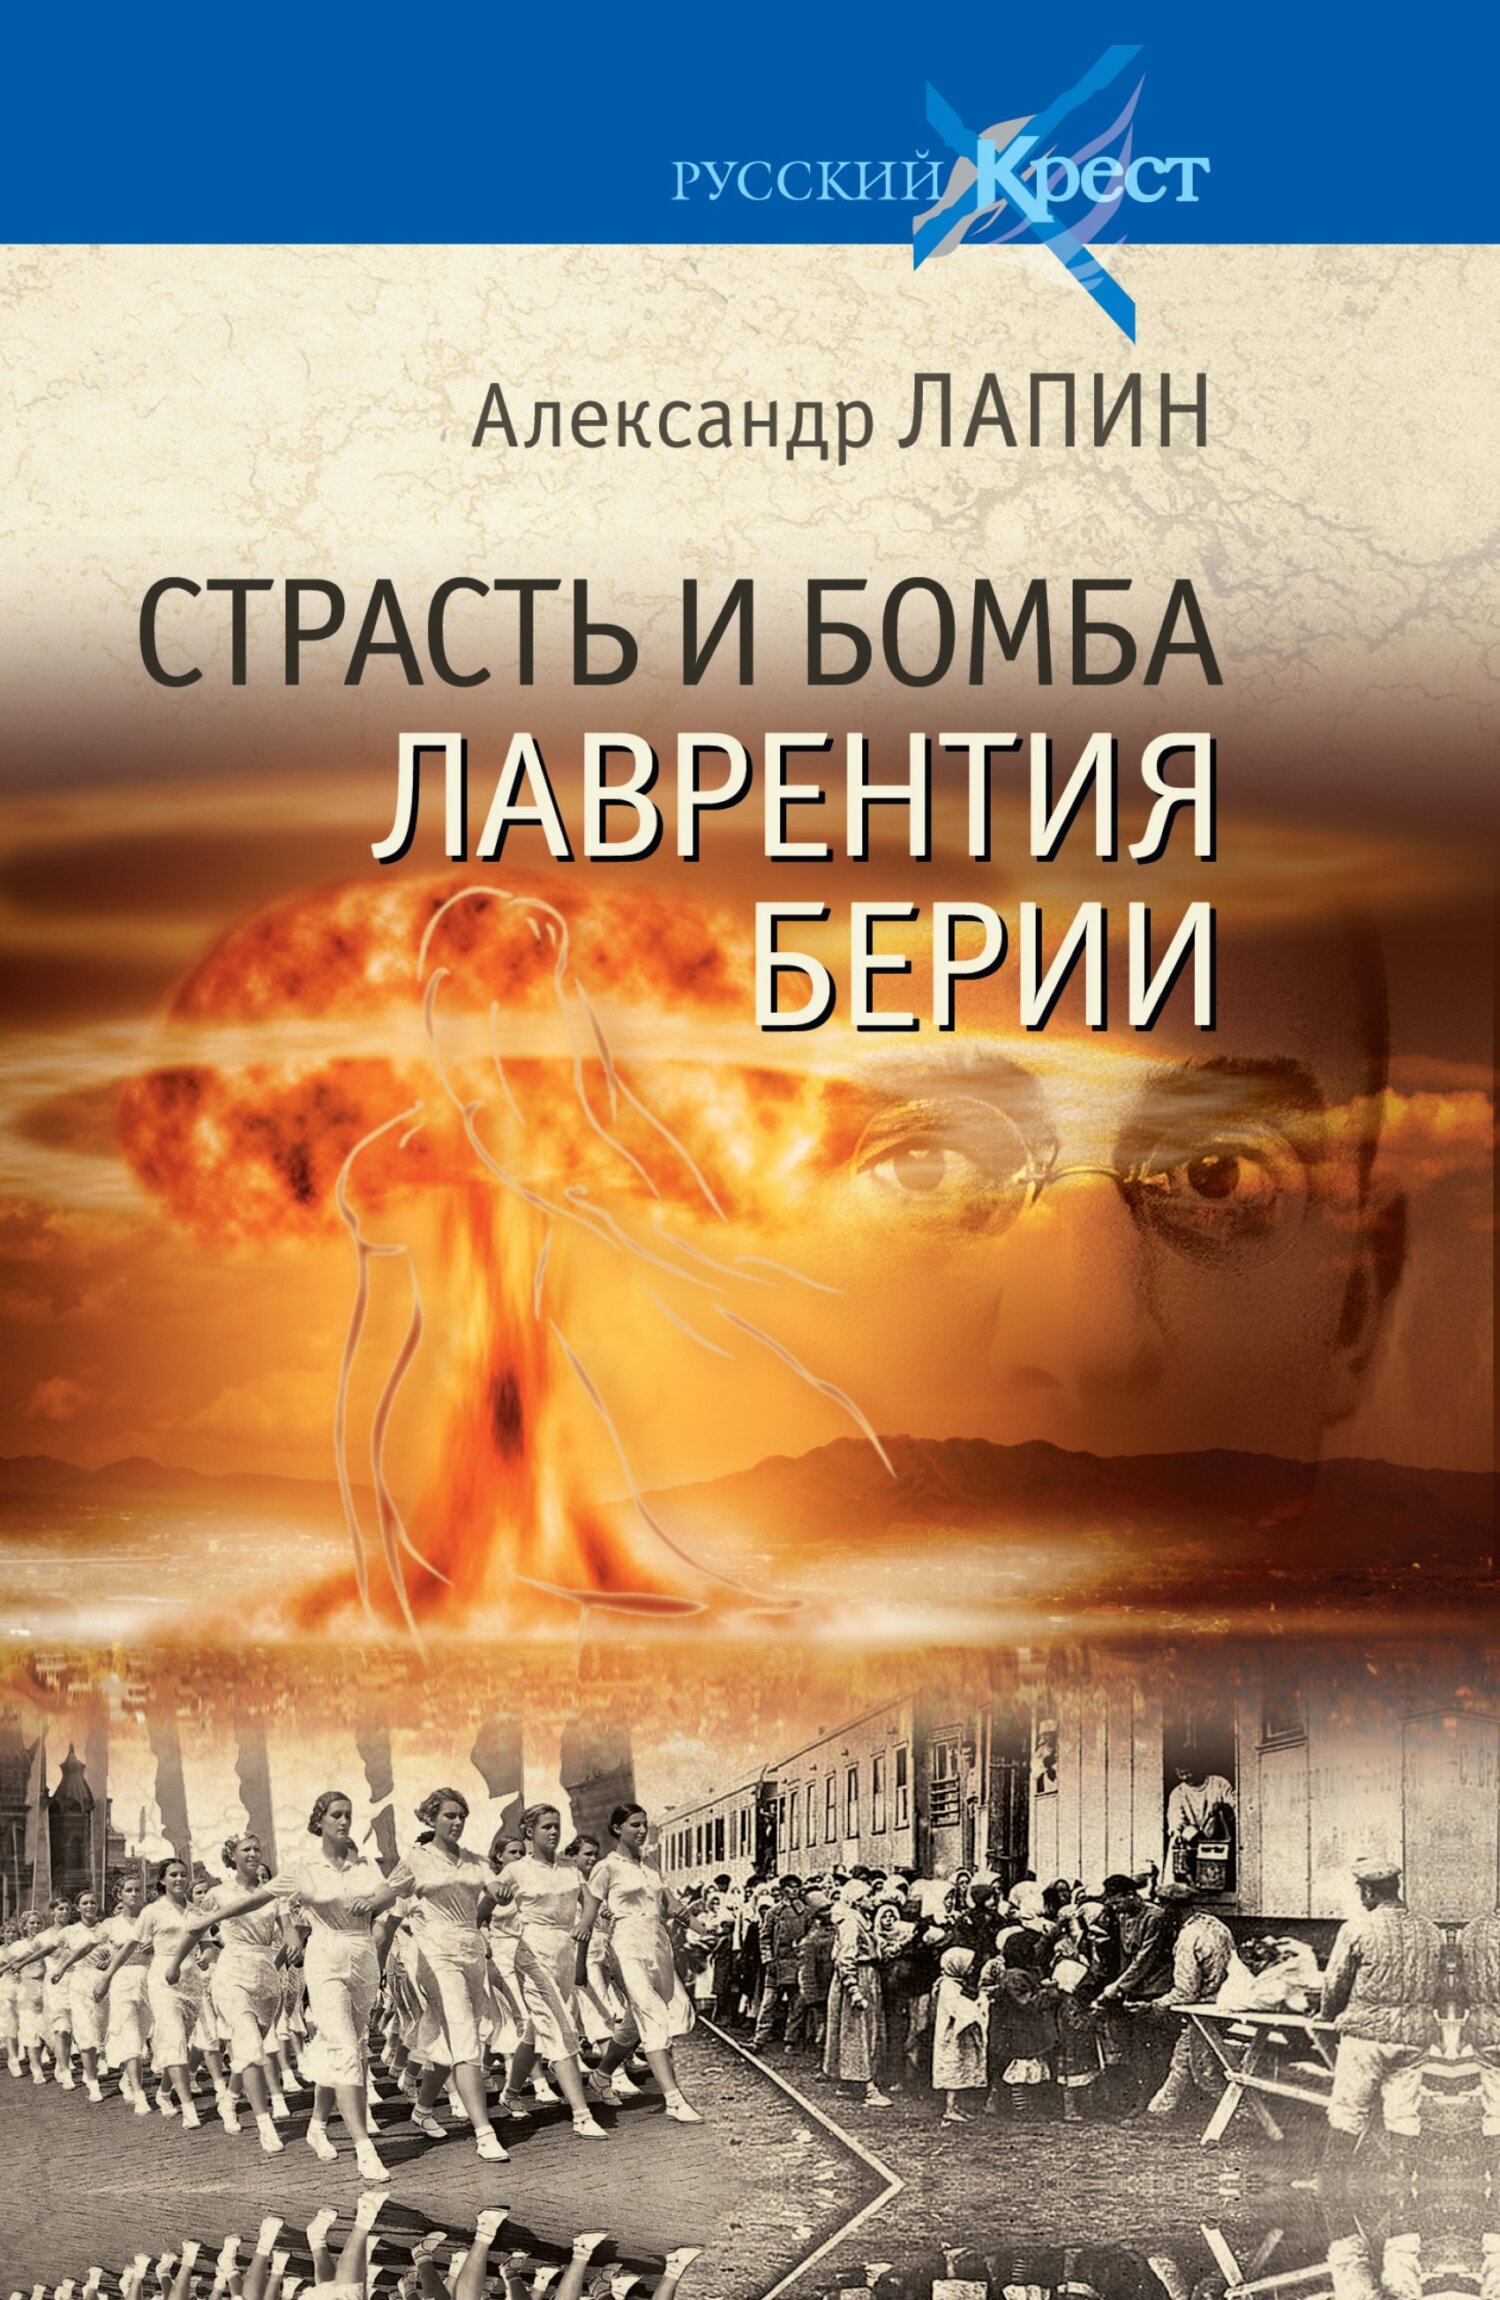 Берия. Проигрыш (Россия, 2010, полная версия, 4 серии) на DVD